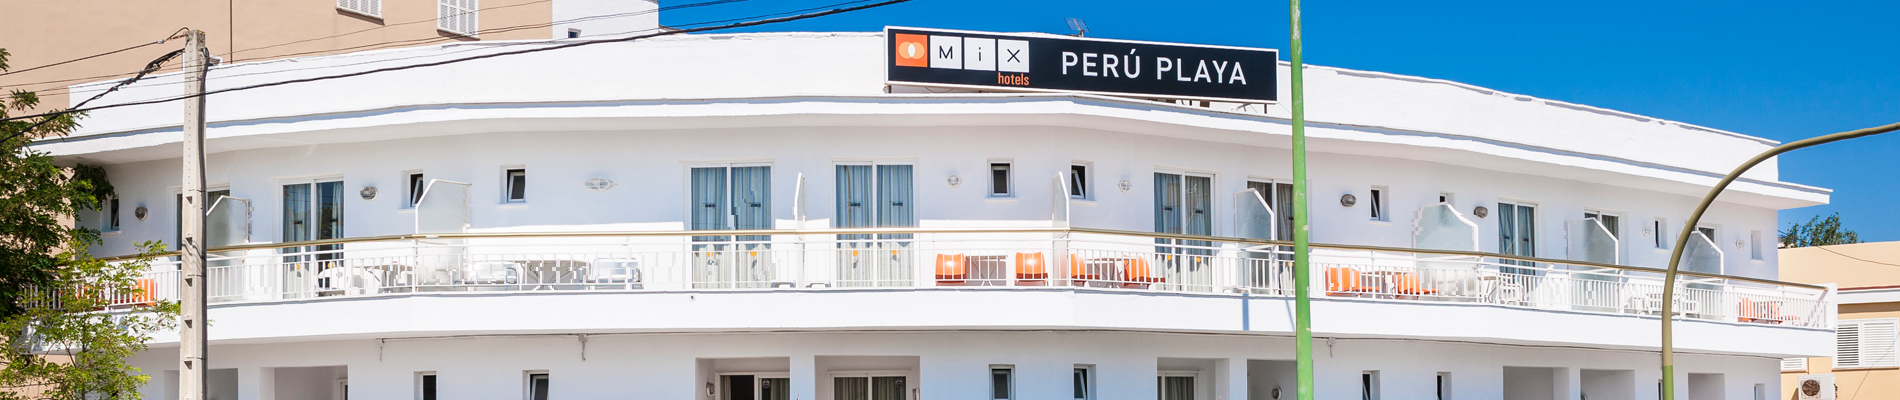 Bienvenido al HR Mix Perú Playa